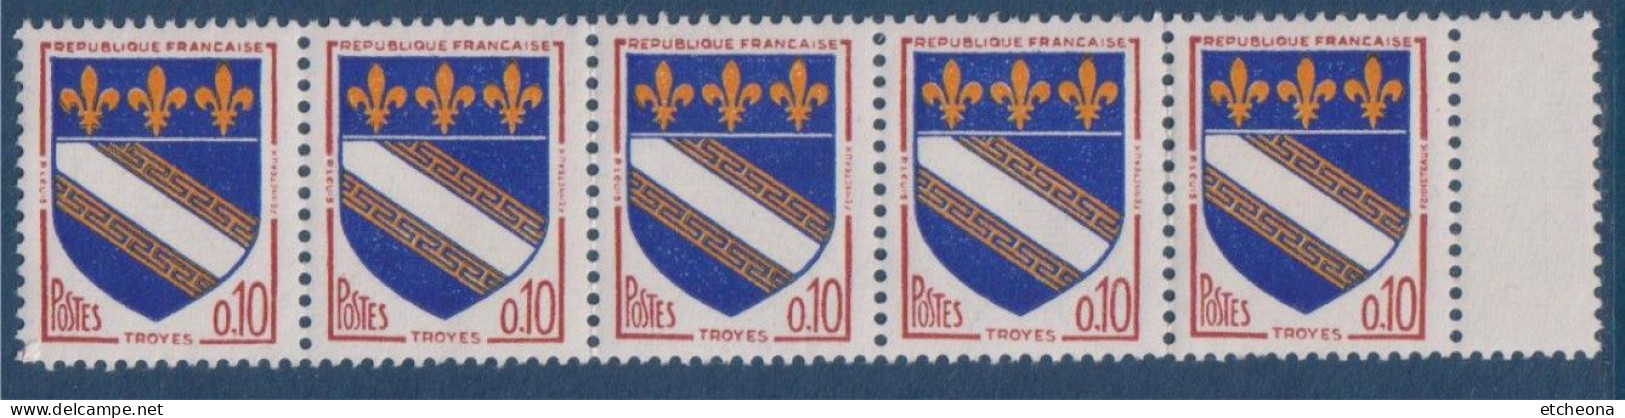 Troyes Armoiries De Villes IV N°1353 Bande De 5 Timbres Neufs Avec Pont De Feuille à Droite - 1941-66 Coat Of Arms And Heraldry